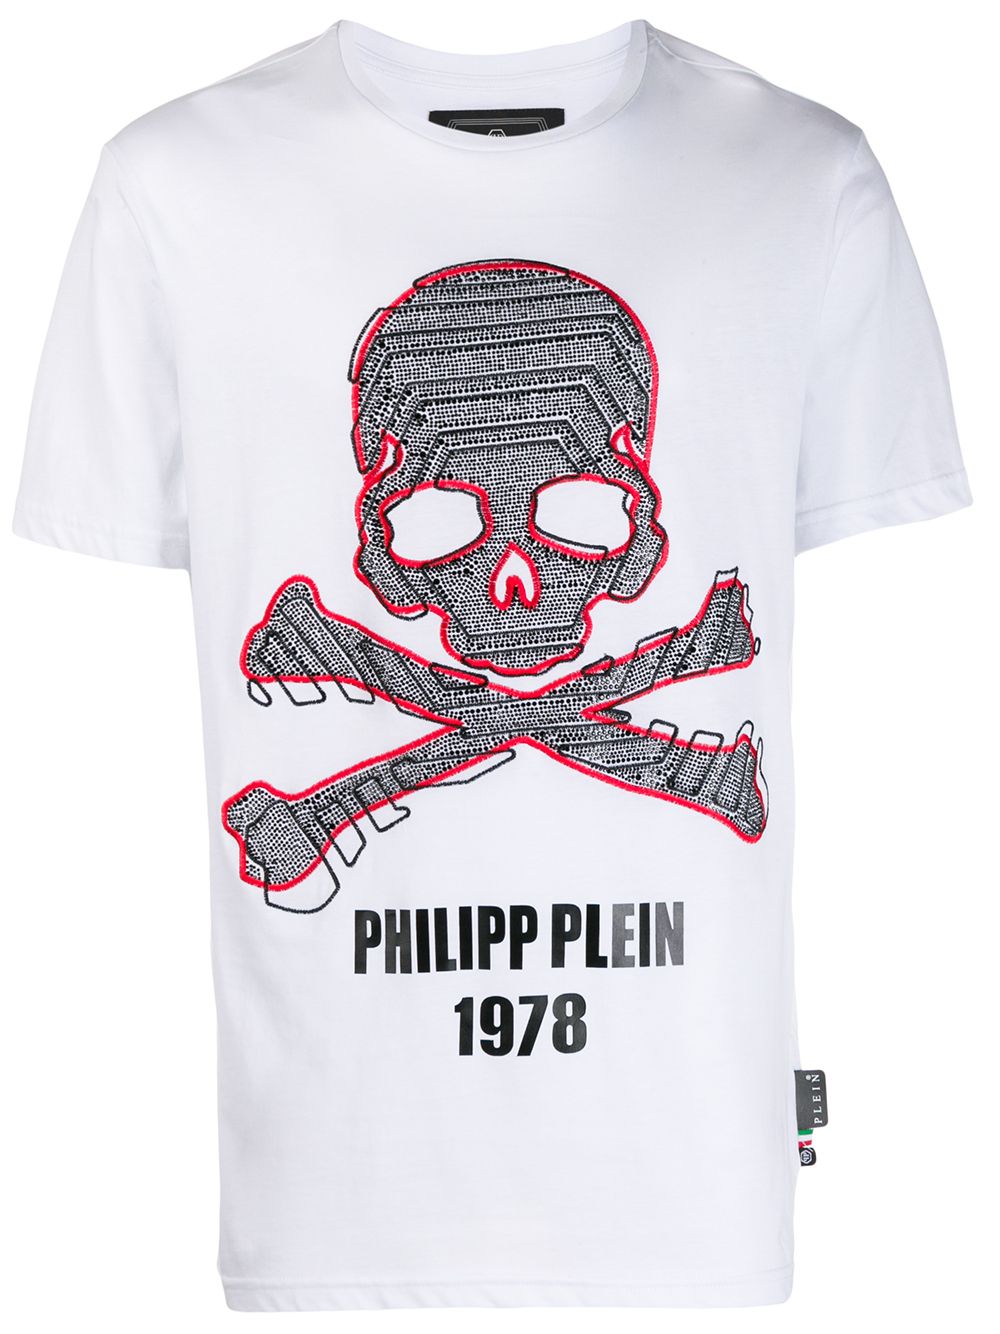 фото Philipp plein футболка с вышивкой skull